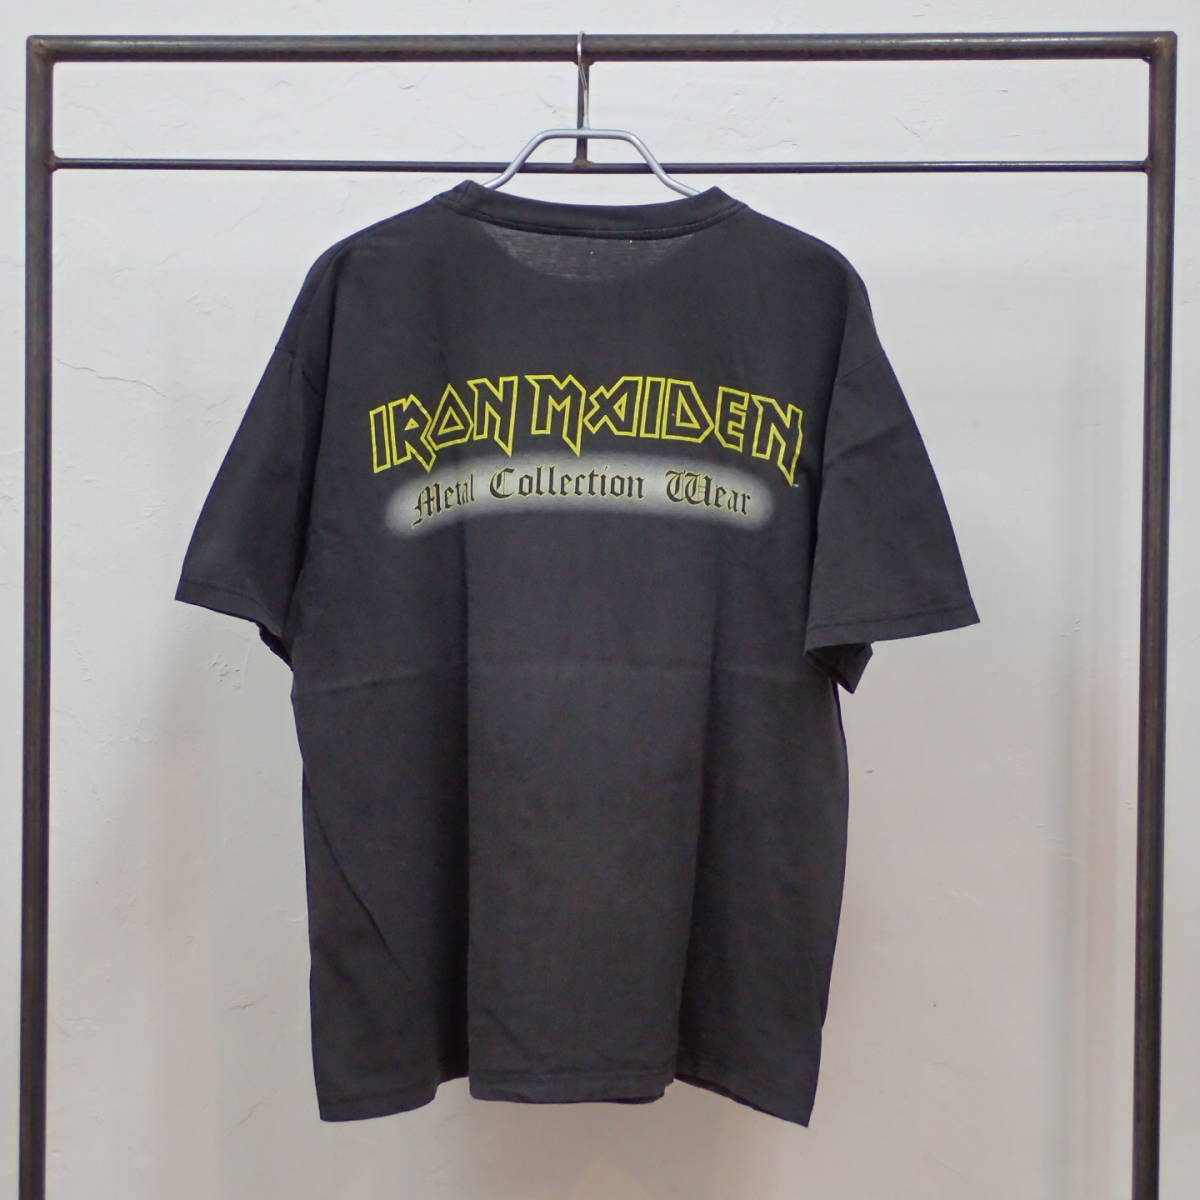 ■ 90s IRON MAIDEN Vintage T-shirt ■ アイアンメイデン ヴィンテージ Tシャツ 当時物 本物 バンドT ロックT heavymetal hardrock